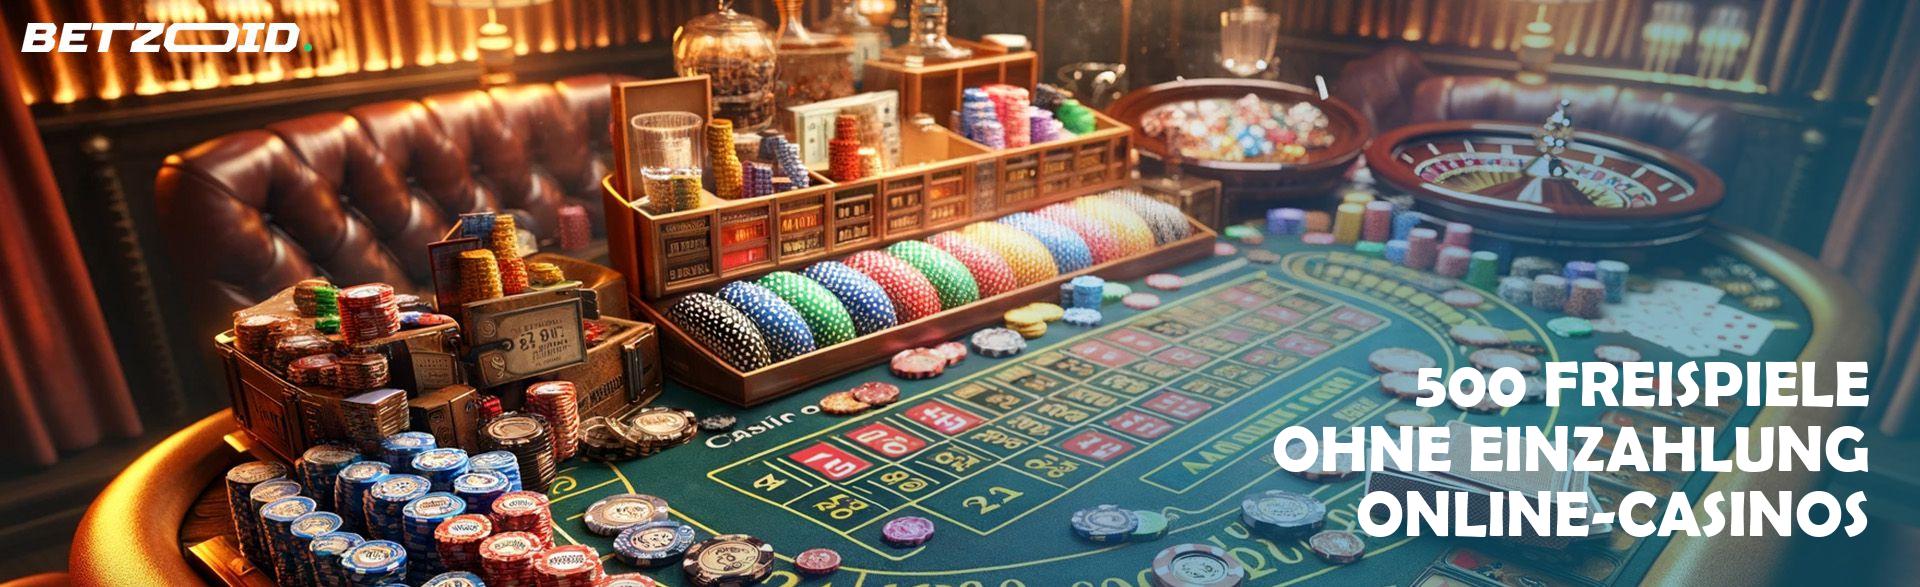 500 Freispiele ohne Einzahlung Online-Casinos.